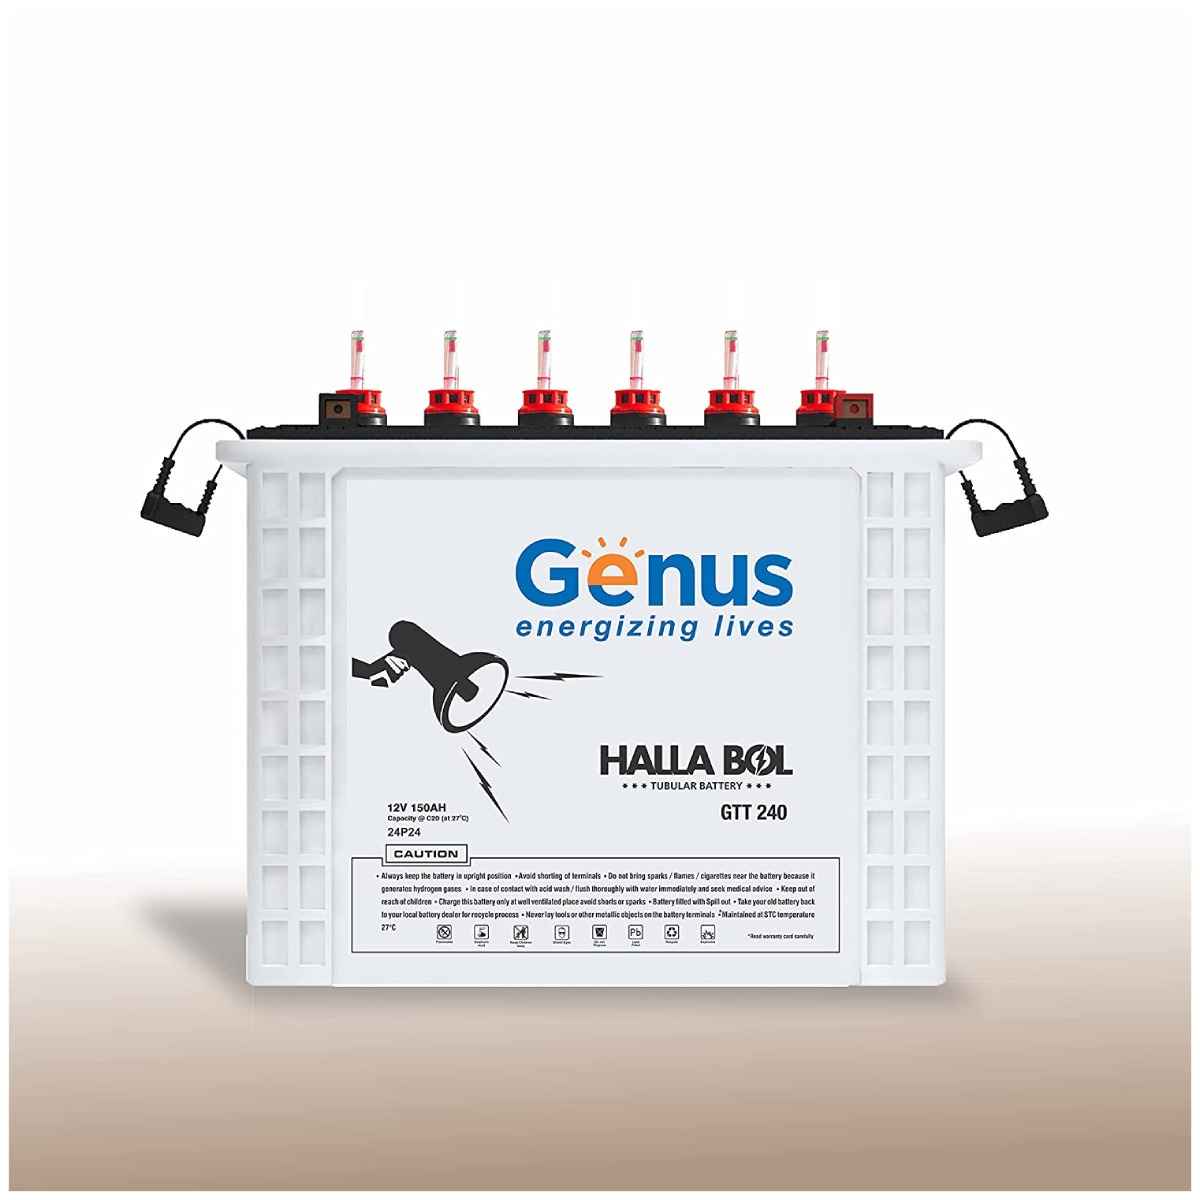 Genus Hallabol GTT240 150 AH Tall Tubular Inverter बैटरी  